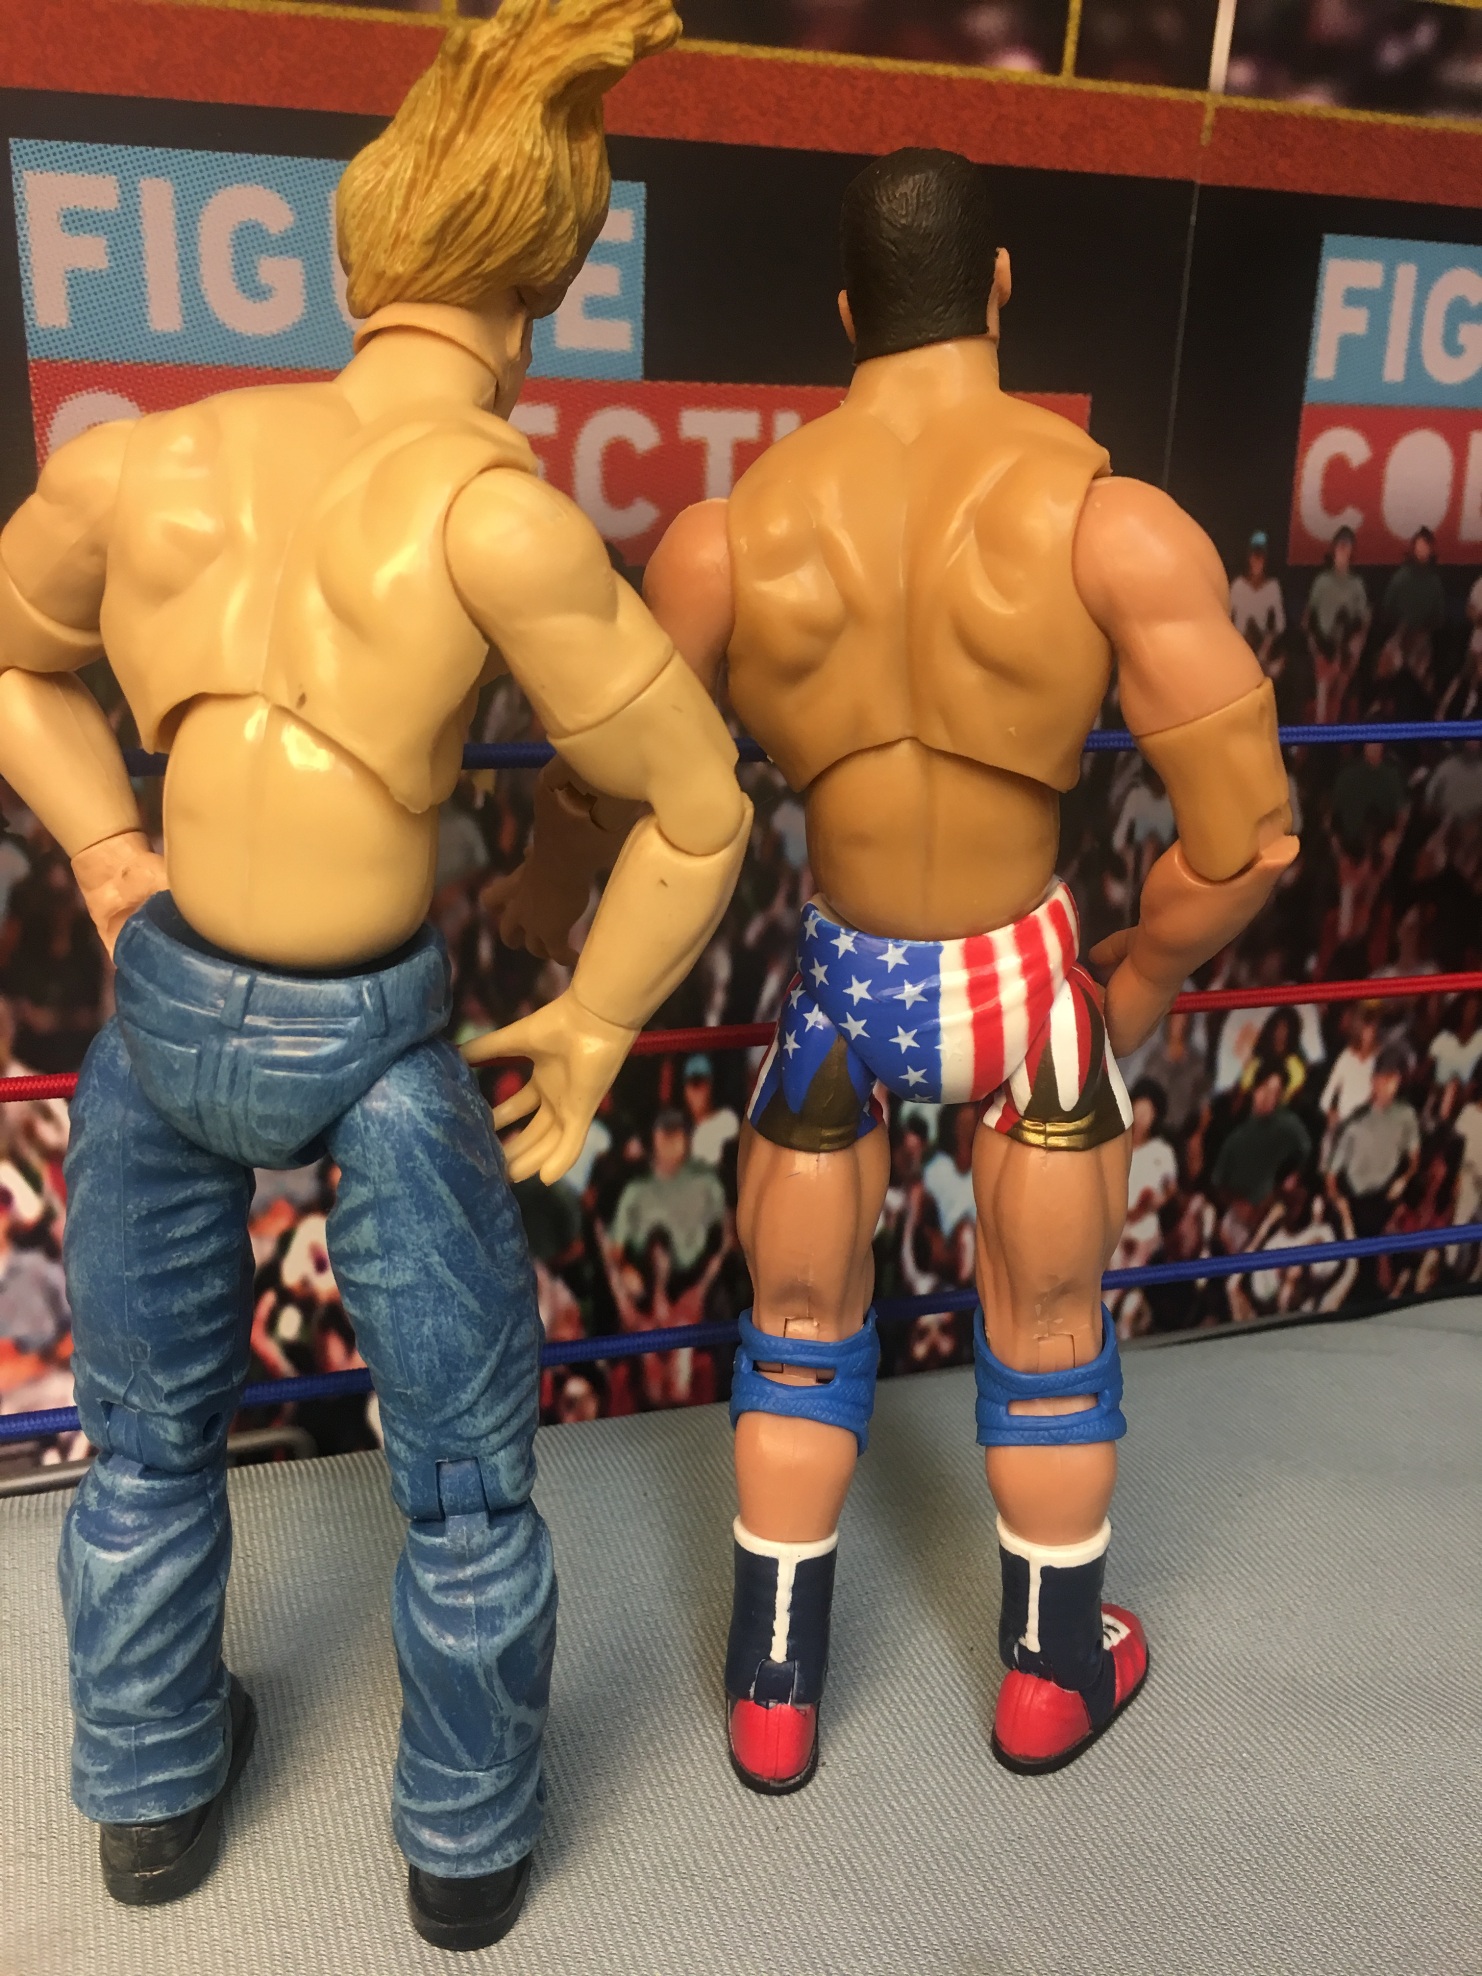 Kurt Angle and Triple H